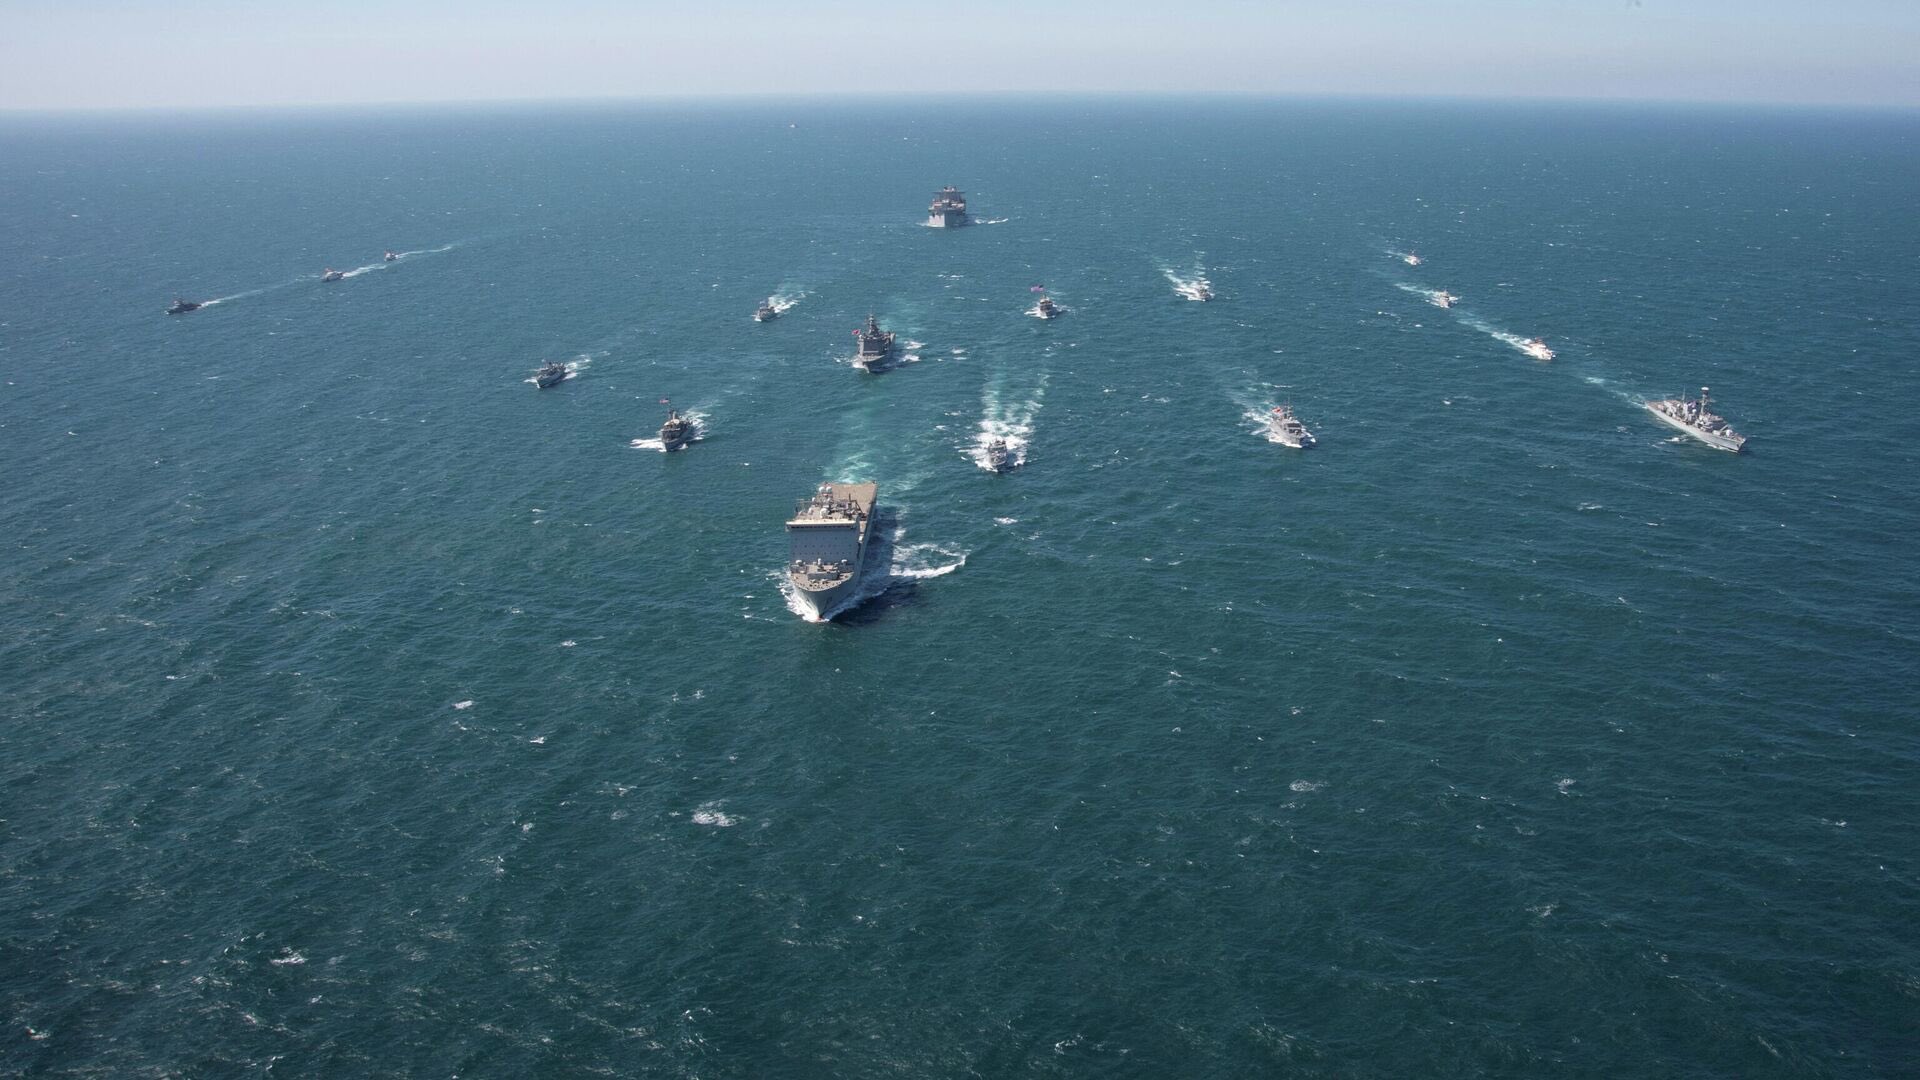 البحرية الأميركية تعلن عن تأسيس "قوة مهام" جديدة قبالة اليمن